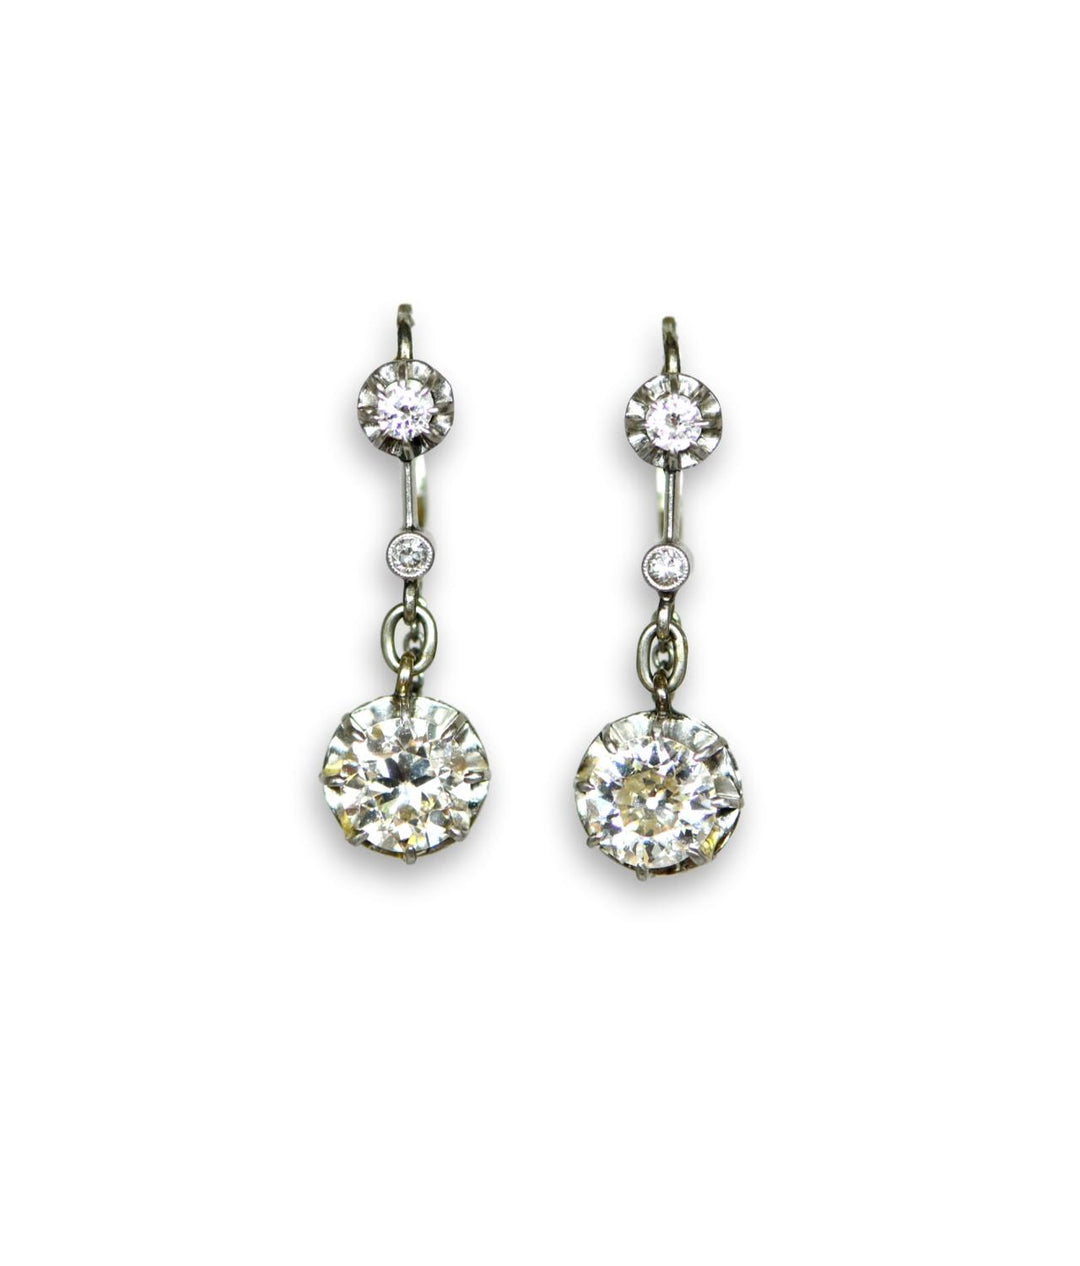 Edwardian Old Cut Diamond Drop Earrings - SOLD